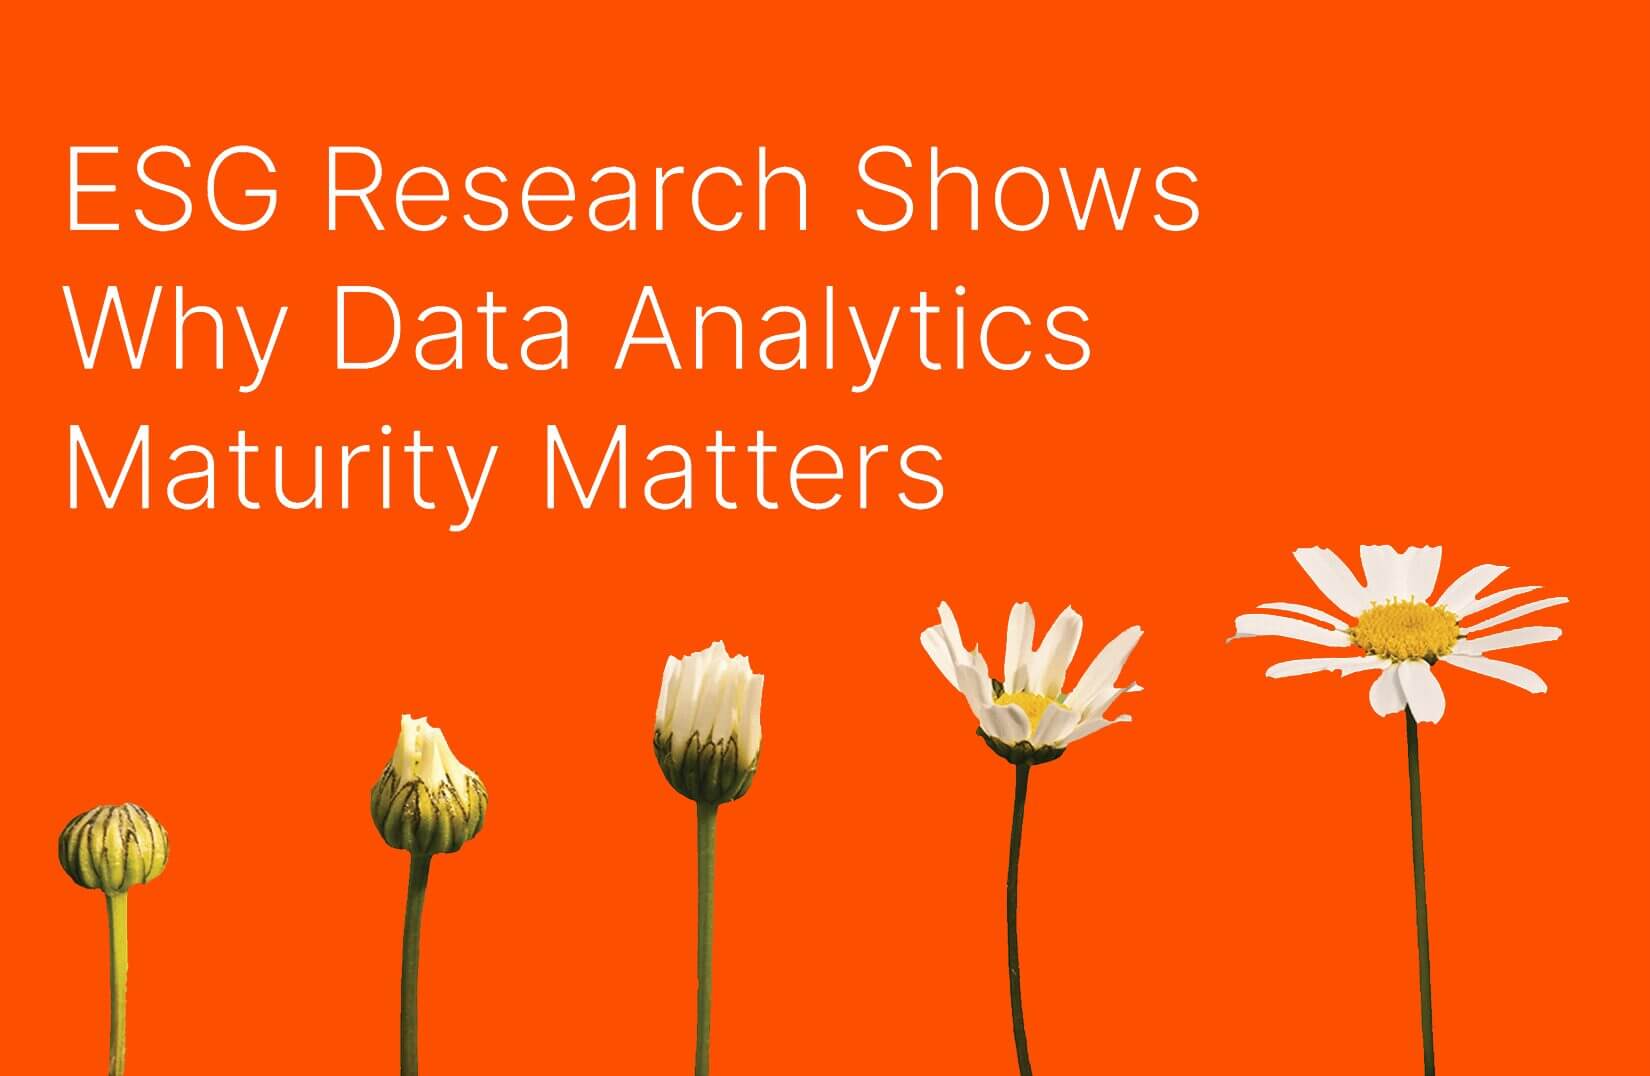 Data analytics maturity